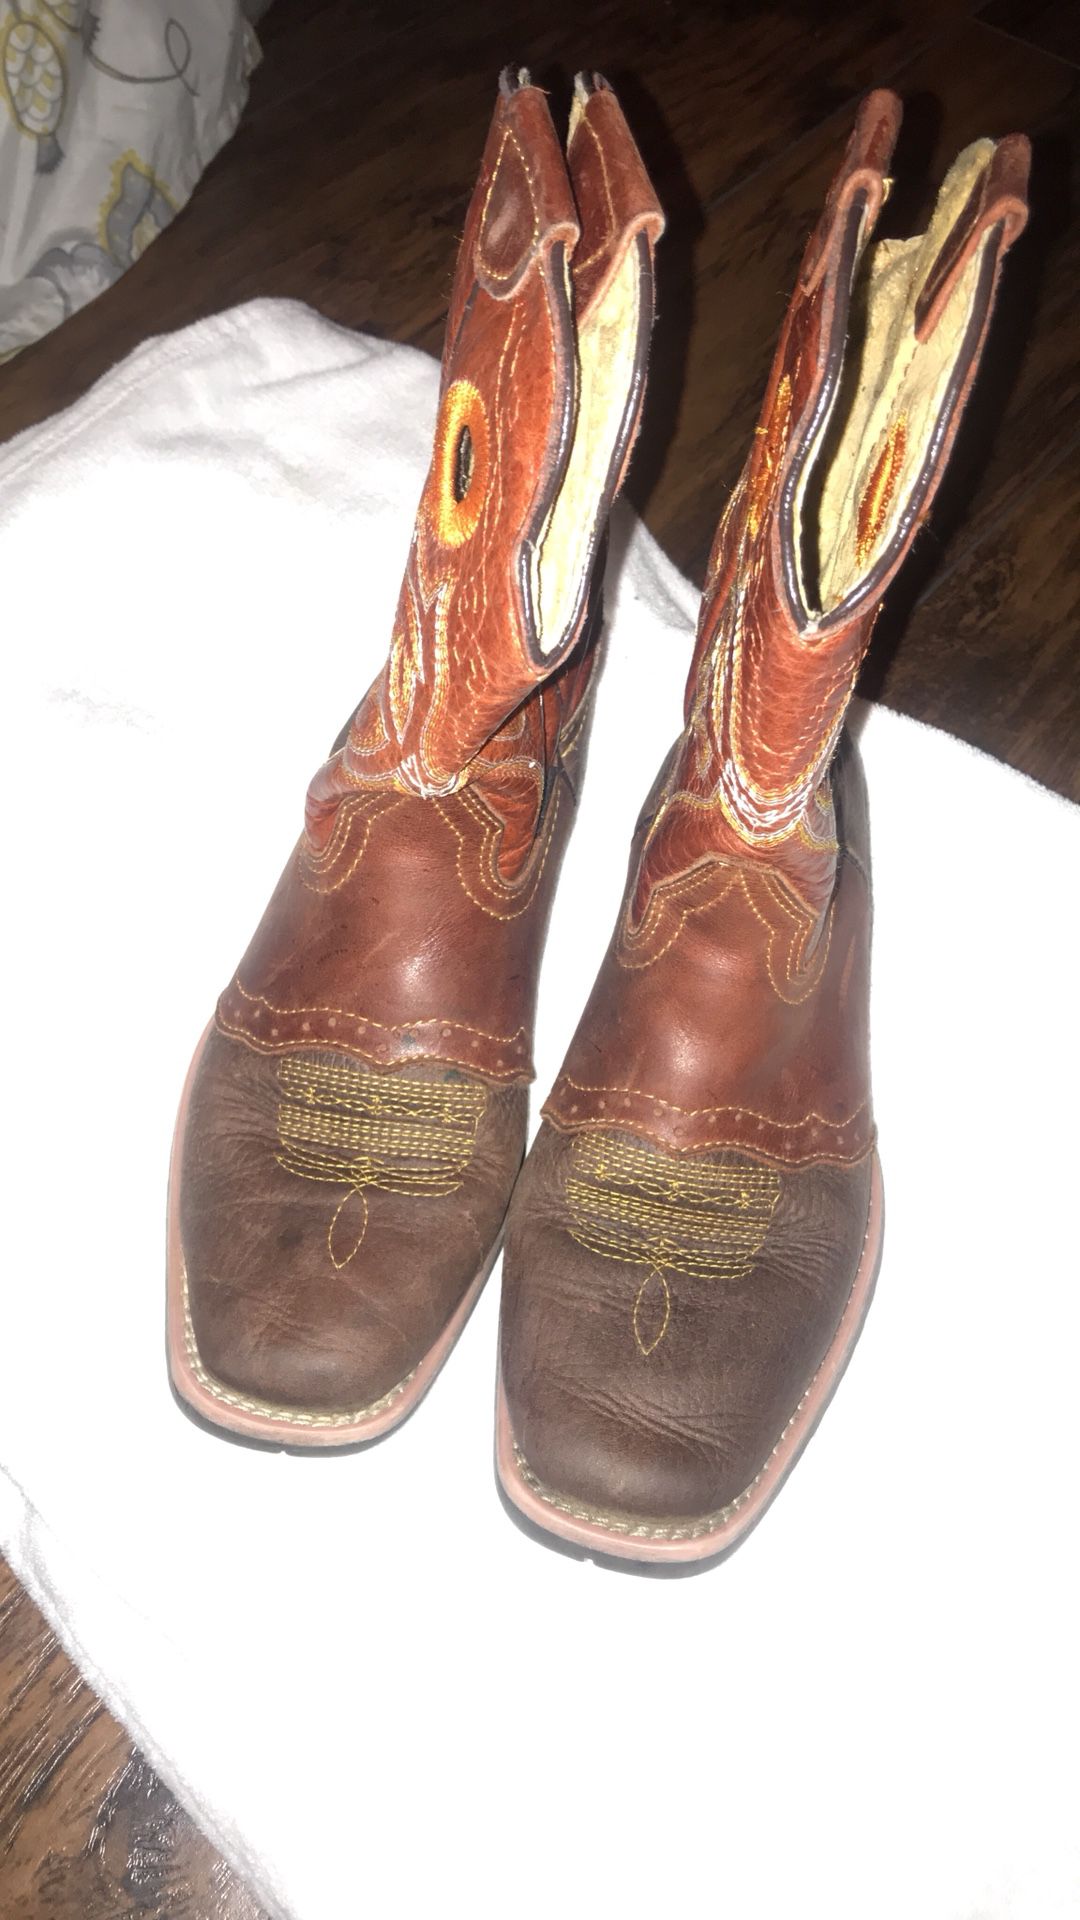 Boys cowboys boots